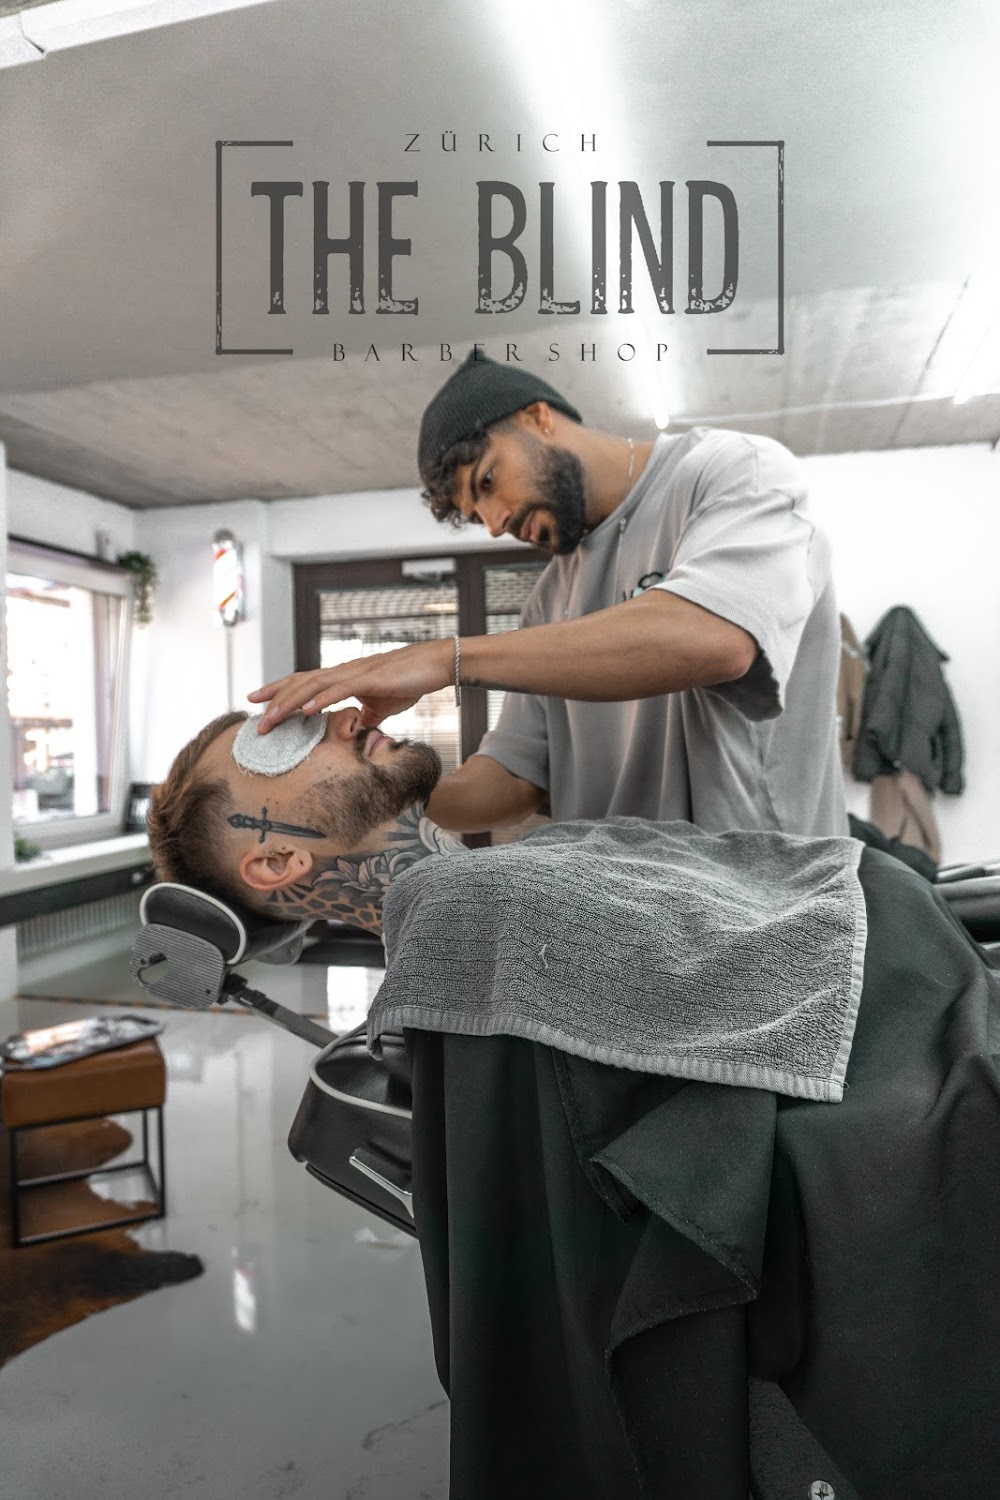 The Blind Barbershop